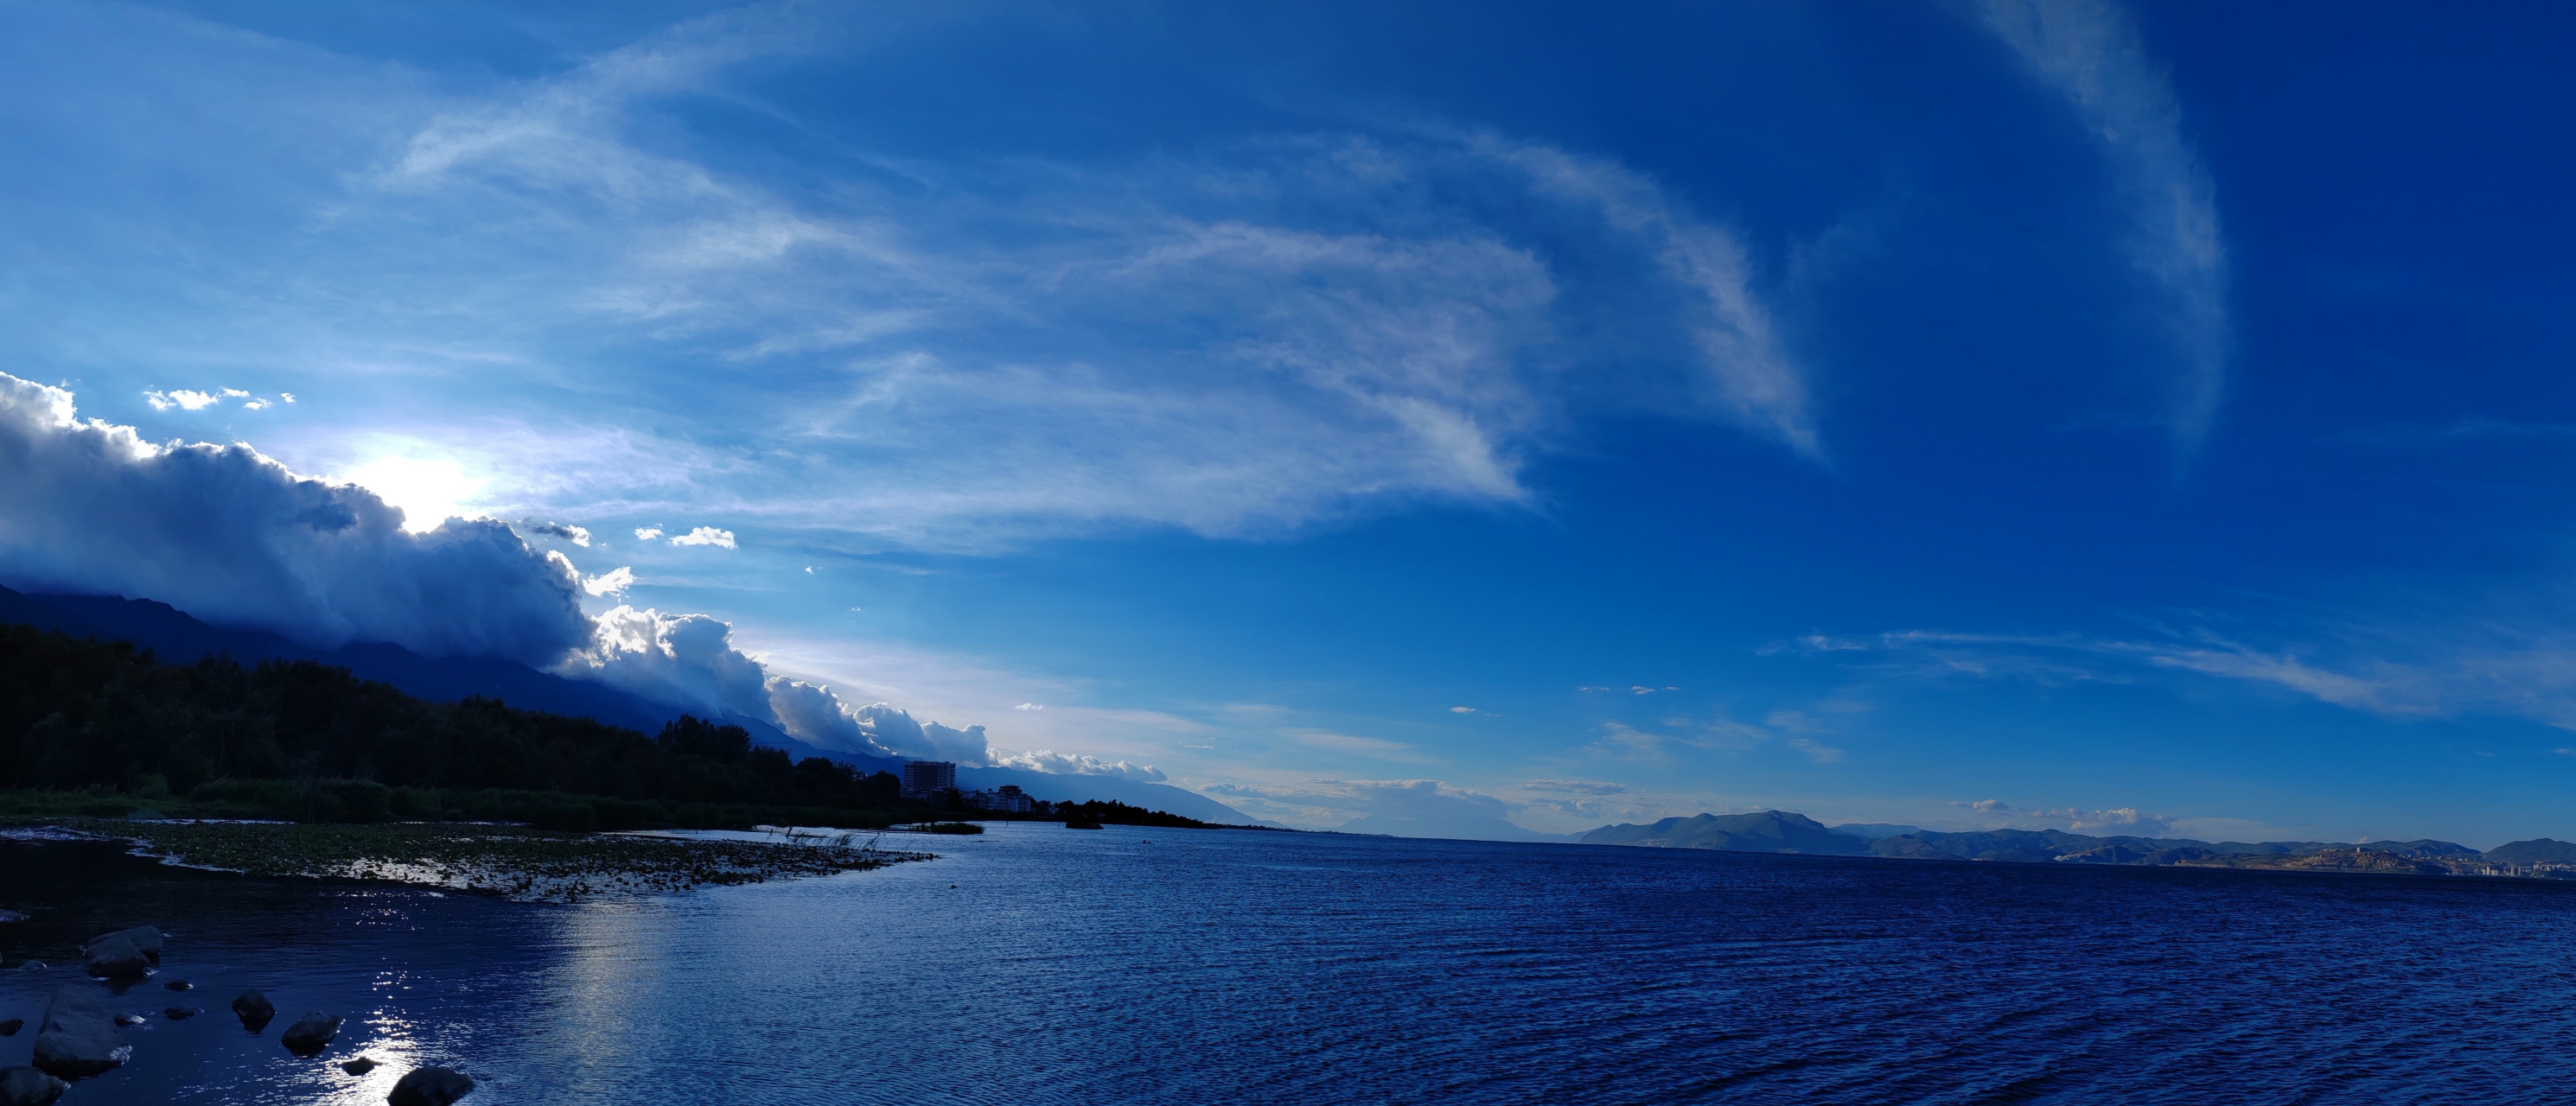 洱海风景图片 拍照图片